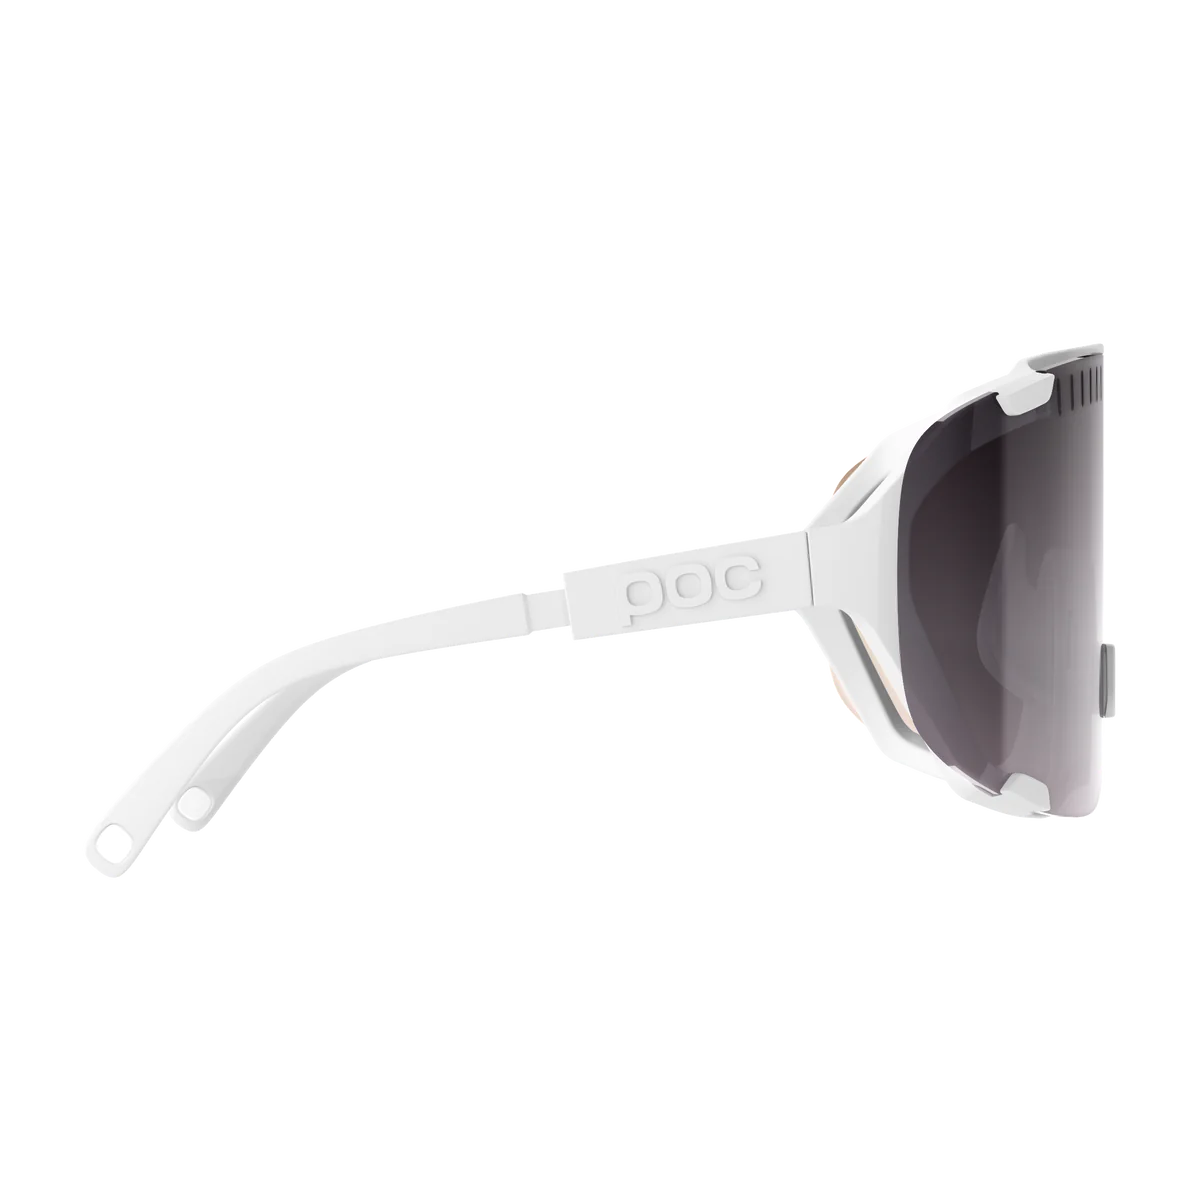 POC Devour - Hydrogen White cykelbrille